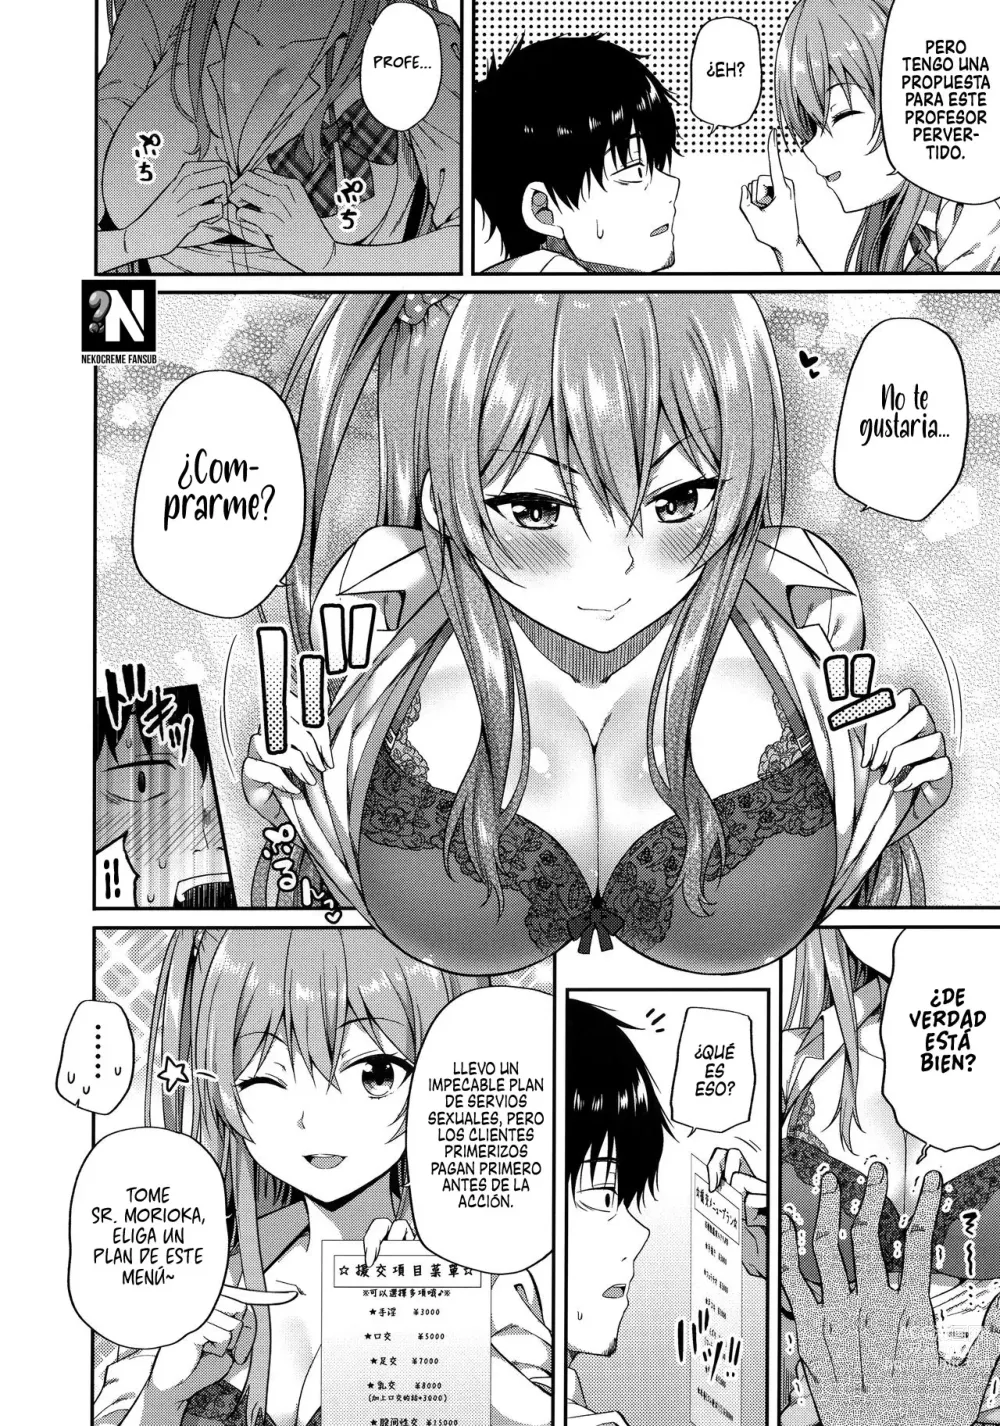 Page 8 of doujinshi ¿Te gustan las chicas que tienen citas compensadas?